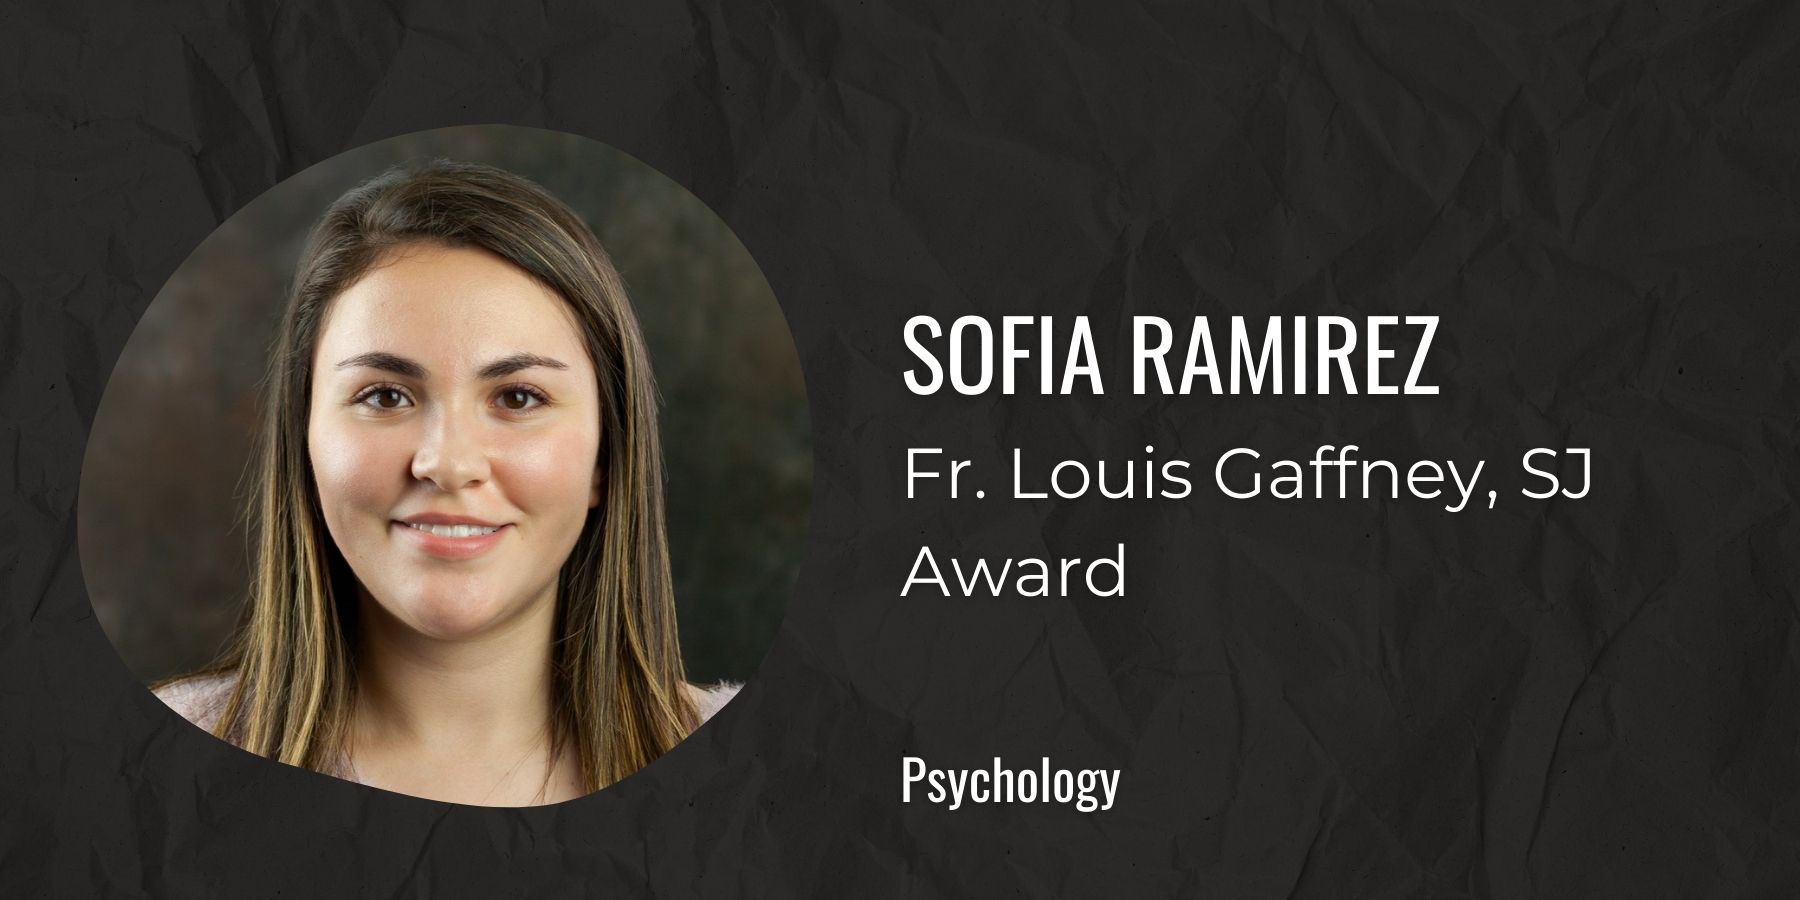 Image of Sofia Ramirez with text: Fr. Louis Gaffney, SJ Award, Psychology
